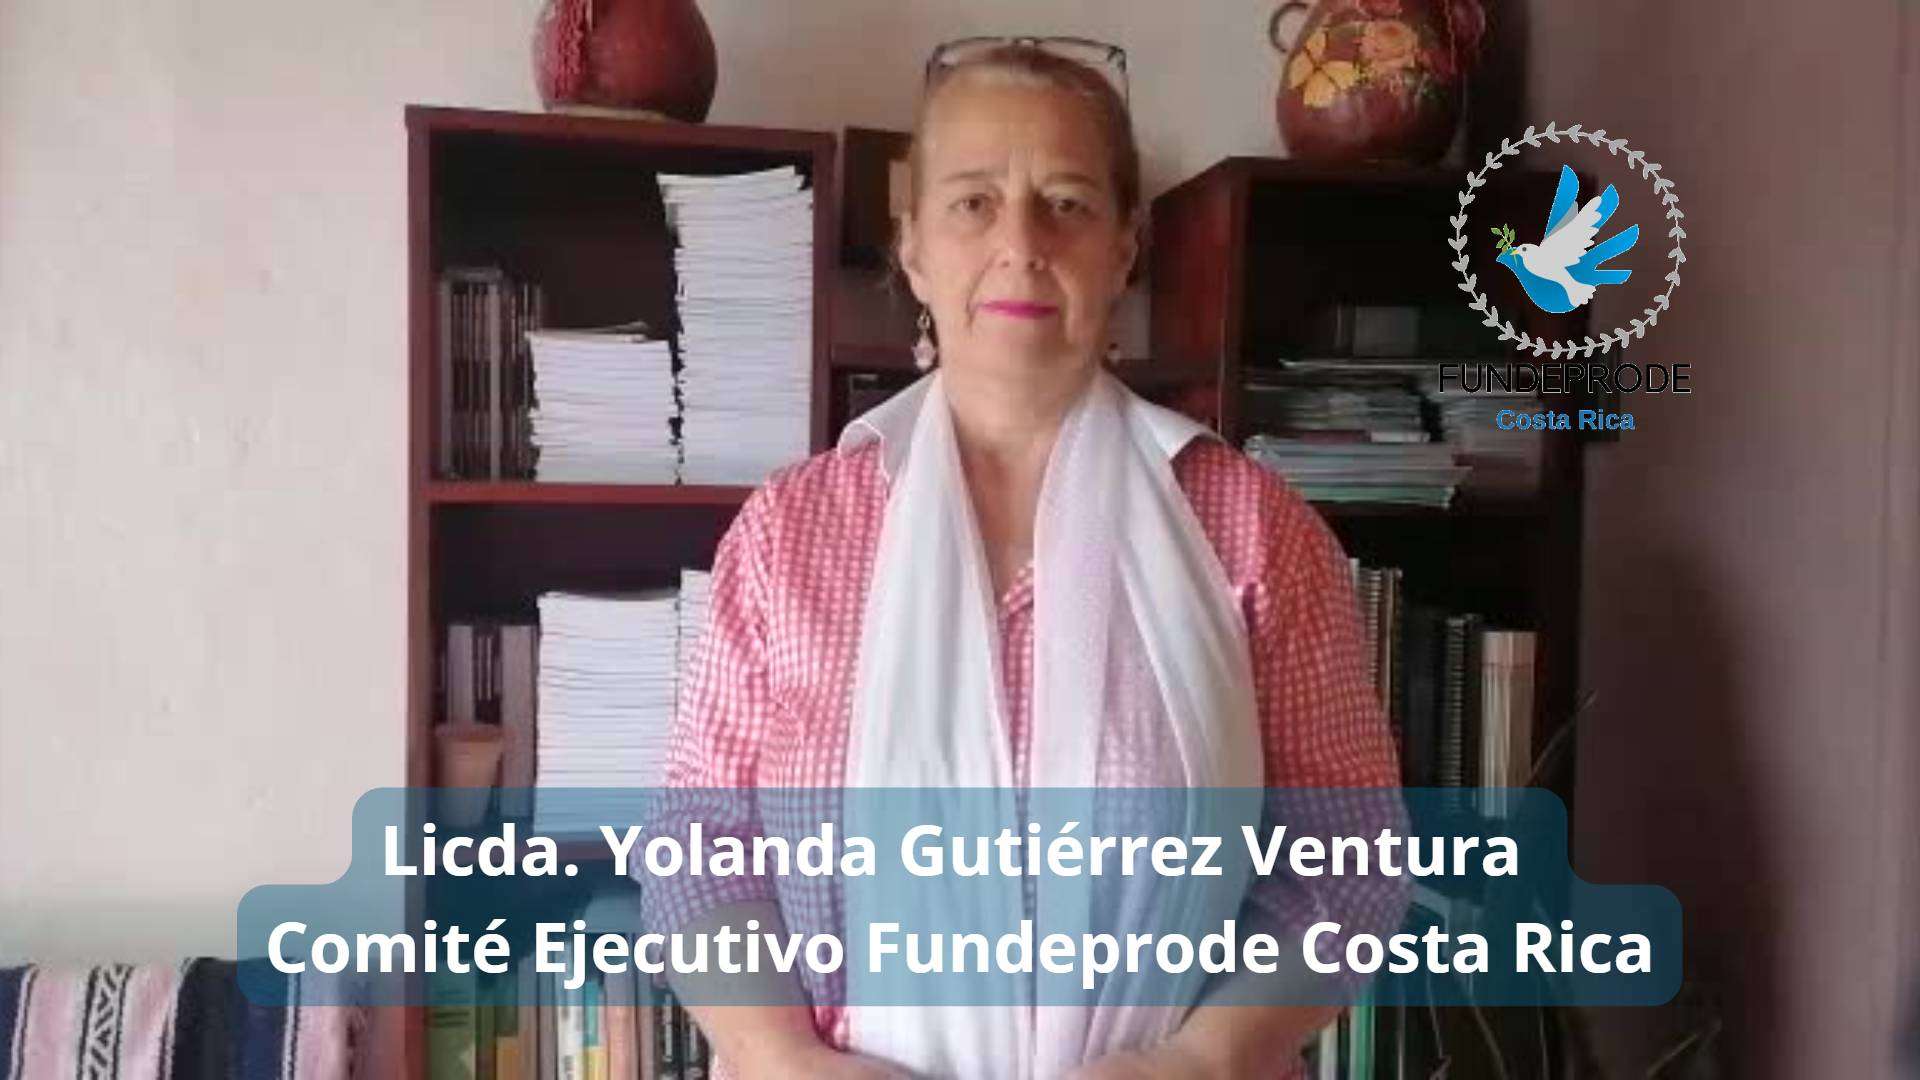 La Fundación para la Defensa y Promoción de Derechos Humanos en Costa Rica - Reflexion